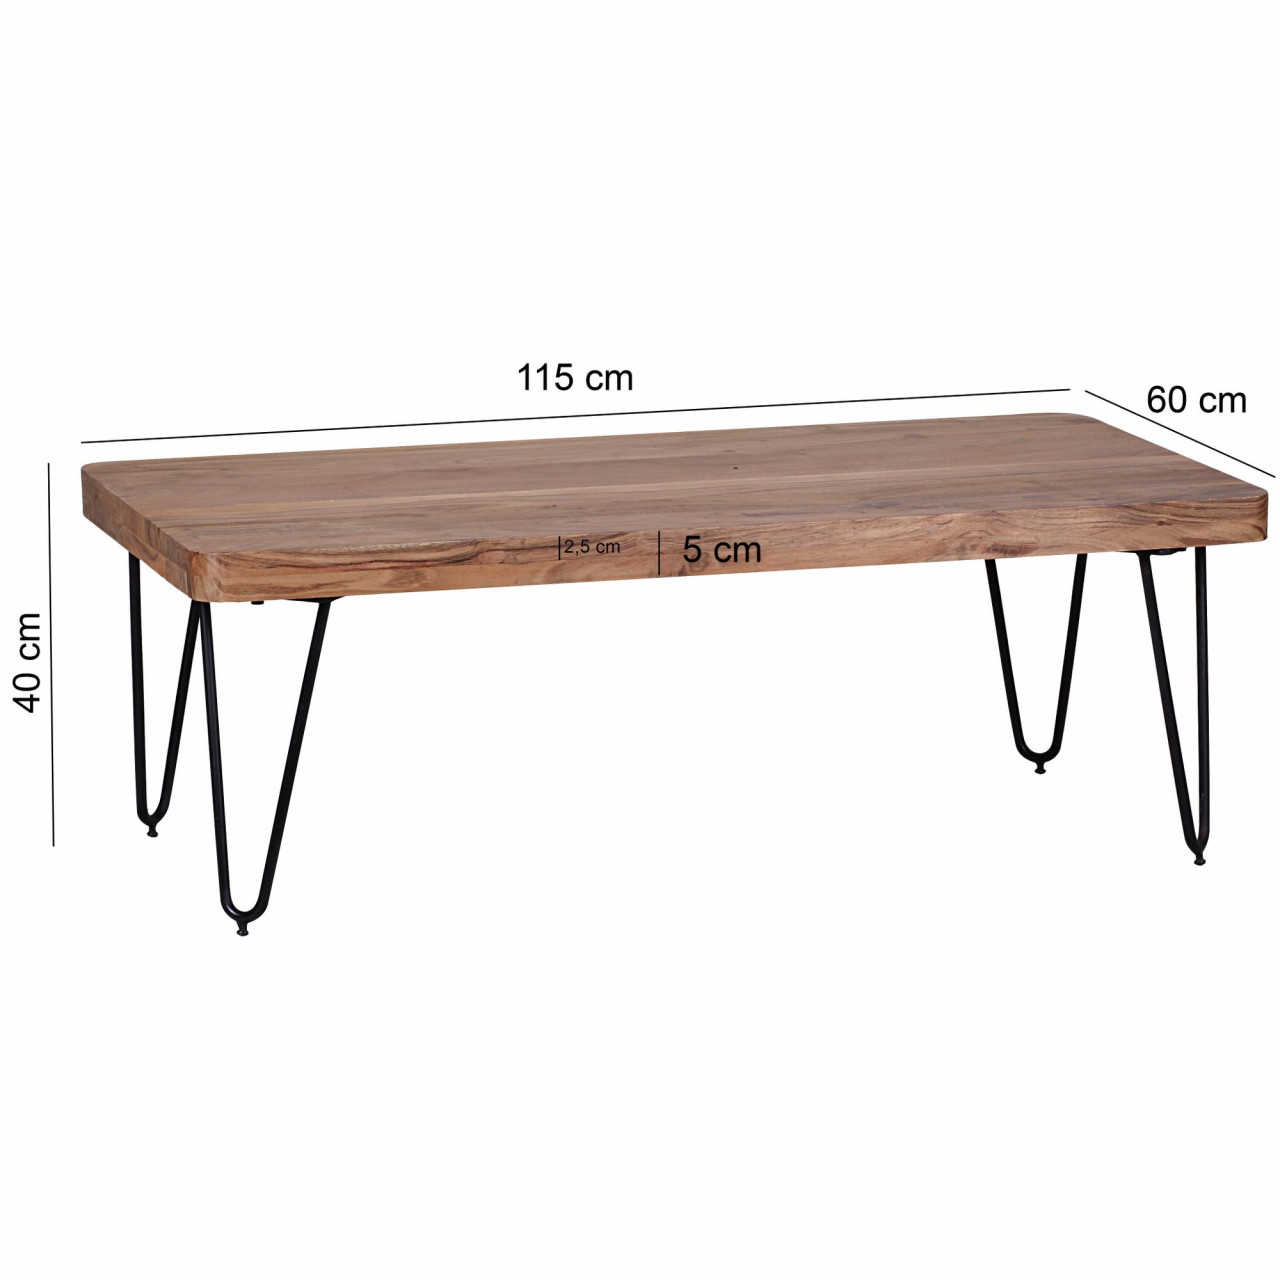 Couchtisch BAGLI Massiv-Holz Akazie 115 cm breit Wohnzimmer-Tisch Design Metallbeine Landhaus-Stil Beistelltisch von Wohnling